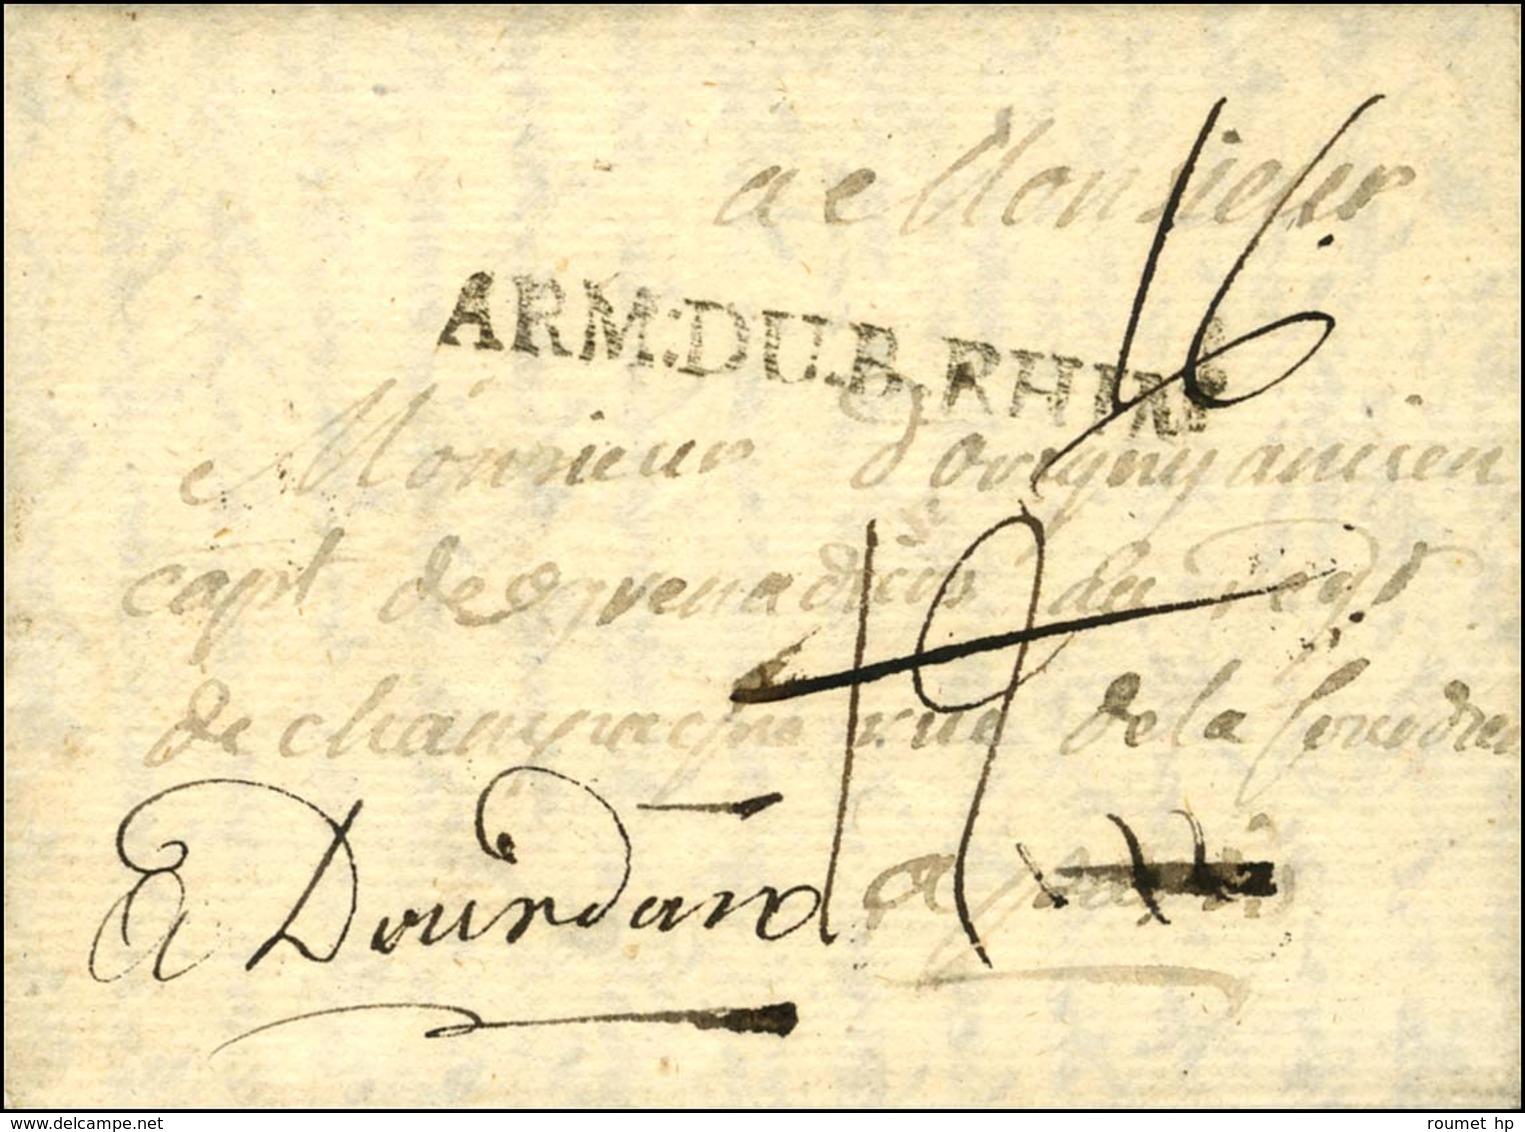 ARM.DU.B.RHIN Sur Lettre Avec Texte Daté Du Camp D'Holber Fladt. 1757. - TB / SUP. - Armeestempel (vor 1900)